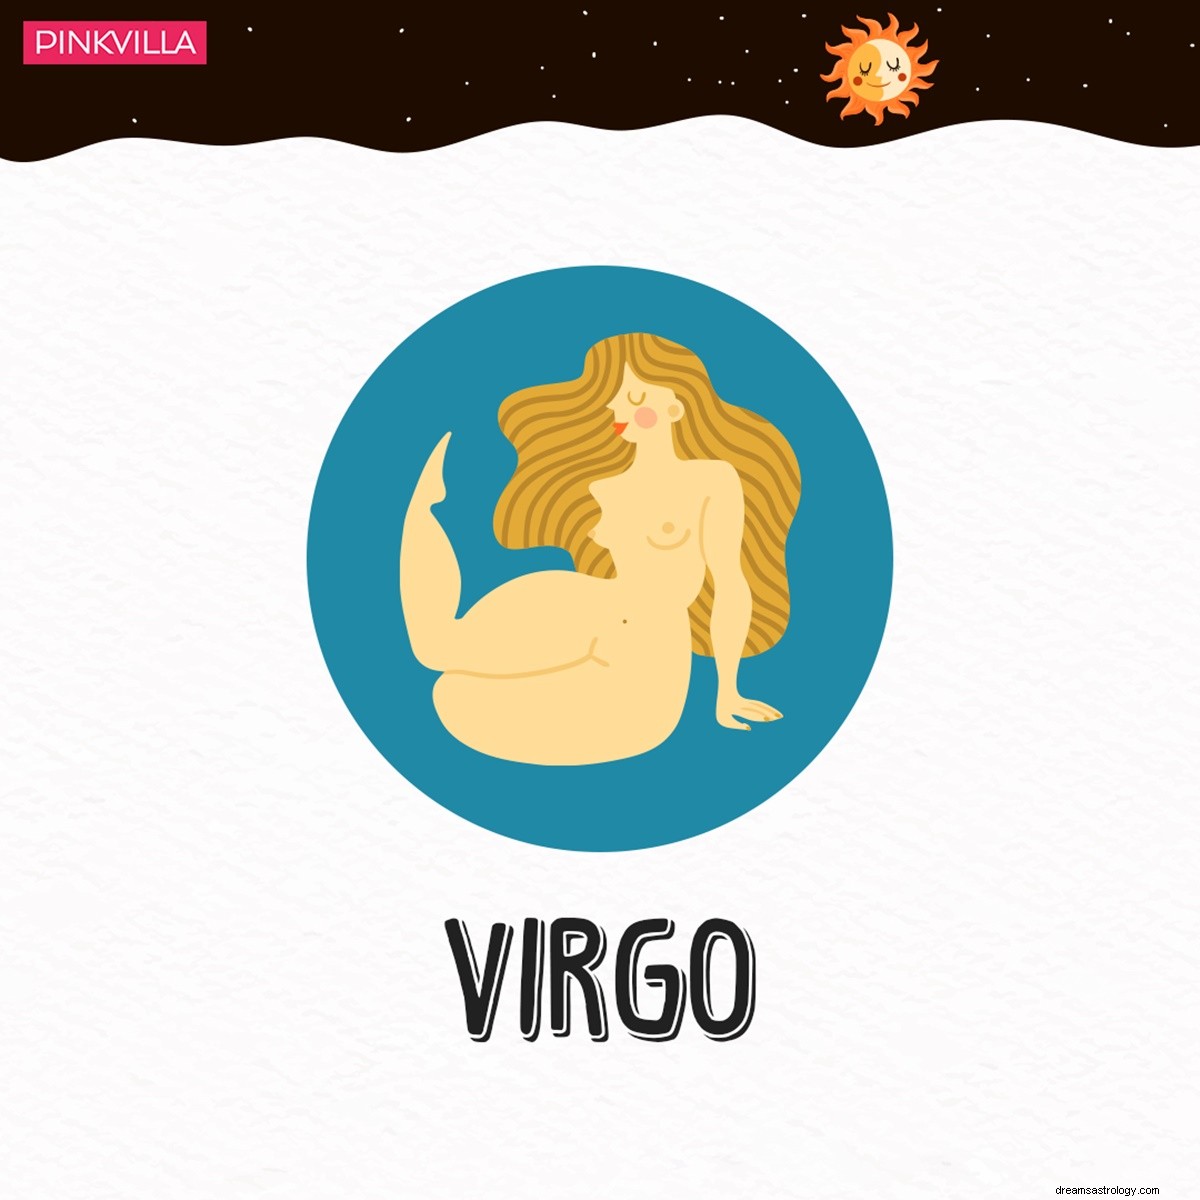 Escorpio a Virgo:4 signos del zodiaco que podrían ser autores intelectuales criminales 